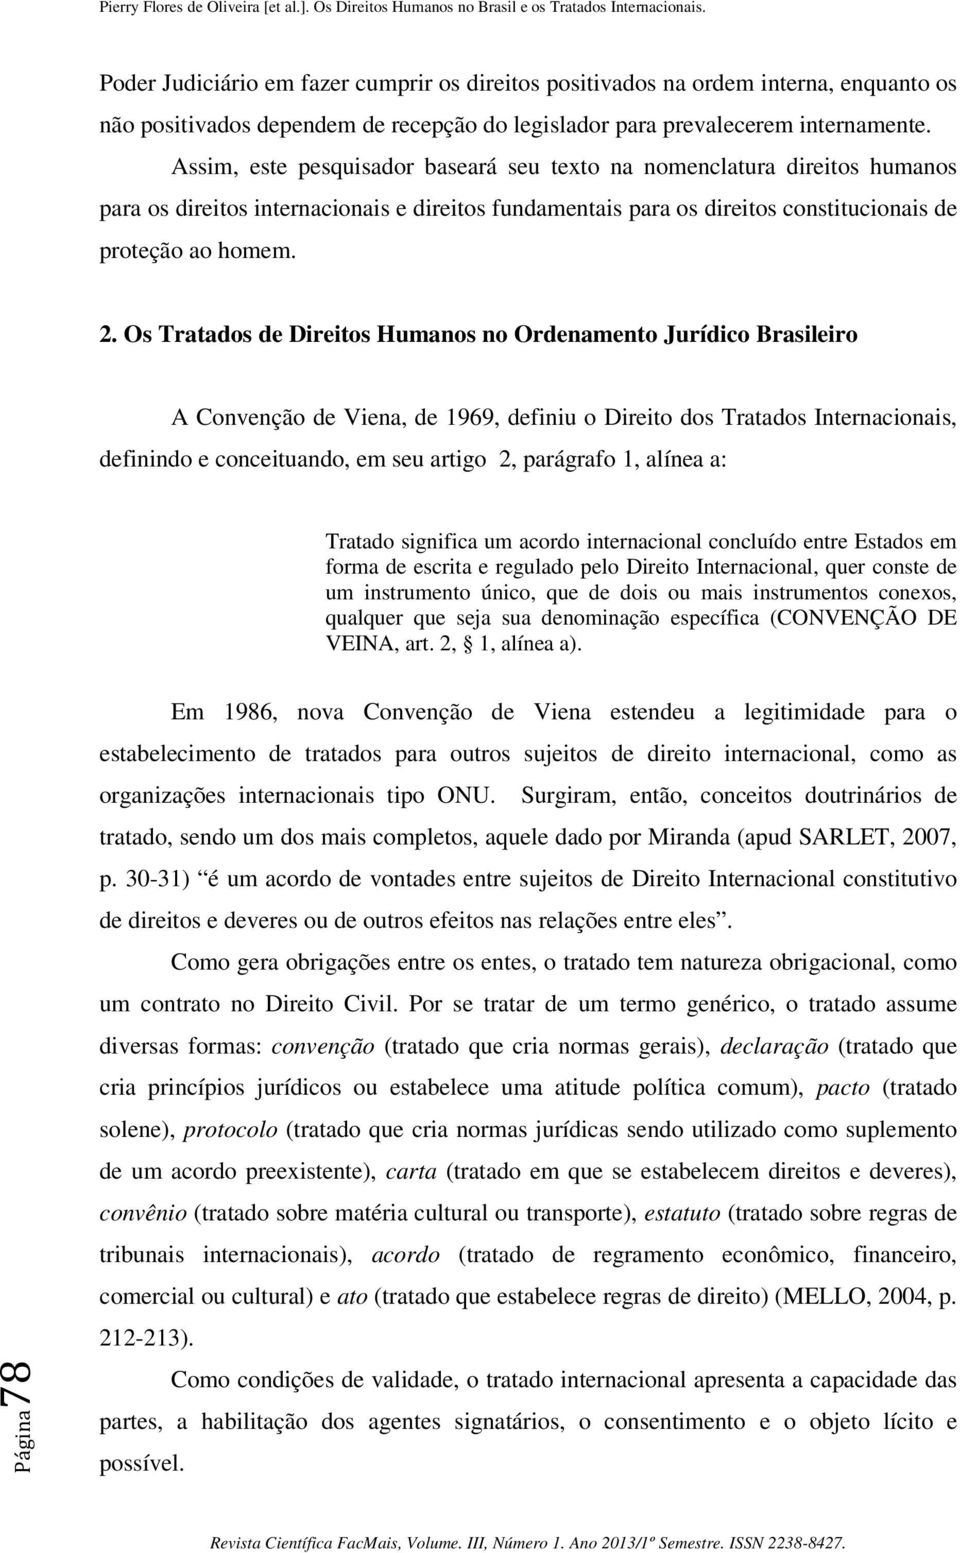 Os Tratados de Direitos Humanos no Ordenamento Jurídico Brasileiro A Convenção de Viena, de 1969, definiu o Direito dos Tratados Internacionais, definindo e conceituando, em seu artigo 2, parágrafo